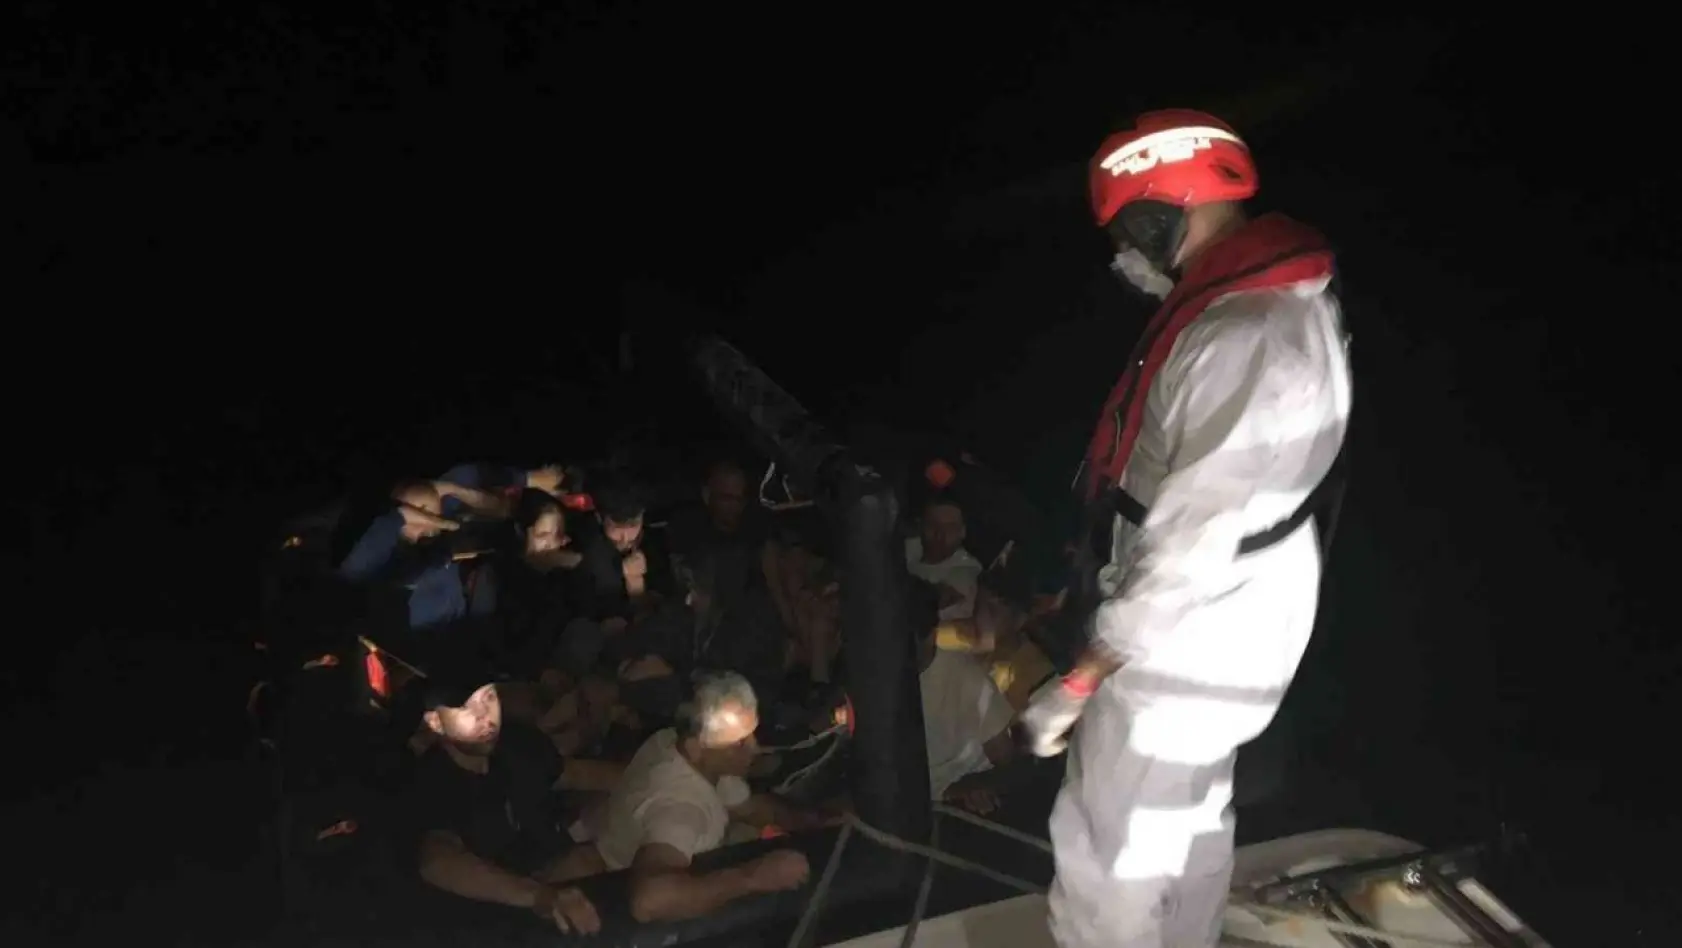 Aydın'da 13 düzensiz göçmen kurtarıldı